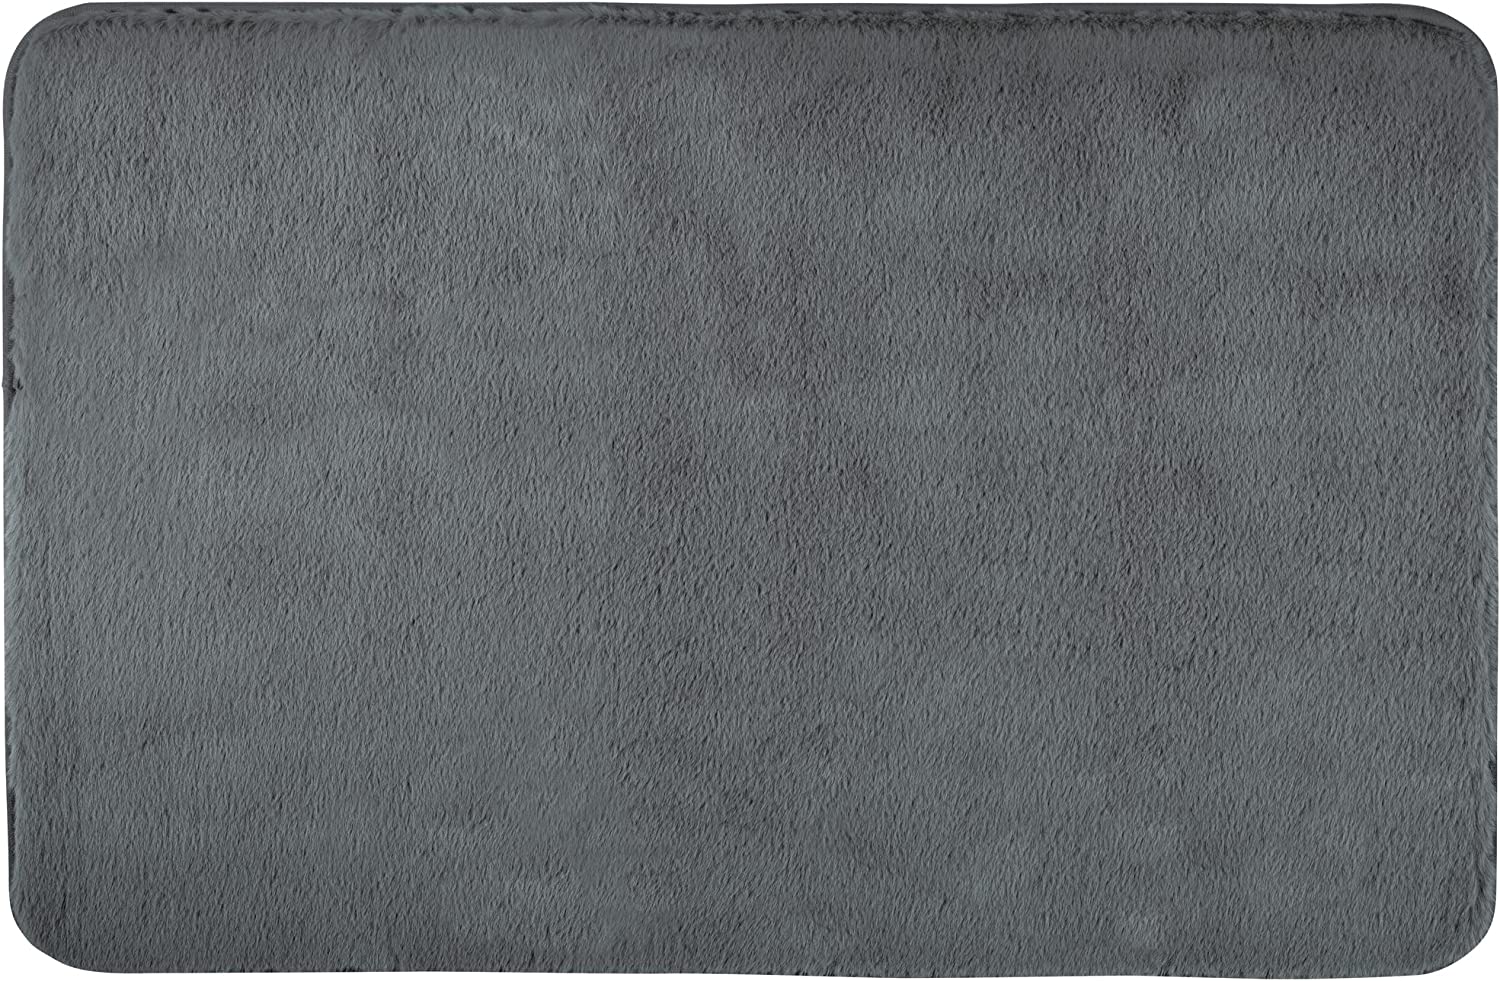 Badematte Saravan, Bad-Teppich in weicher Qualität aus Microfaser (100 % Polyester) mit 20 mm Florhöhe und rutschhemmender Rückseite, schnelltrocknend und fusselfrei, 50 x 80 cm, Anthrazit